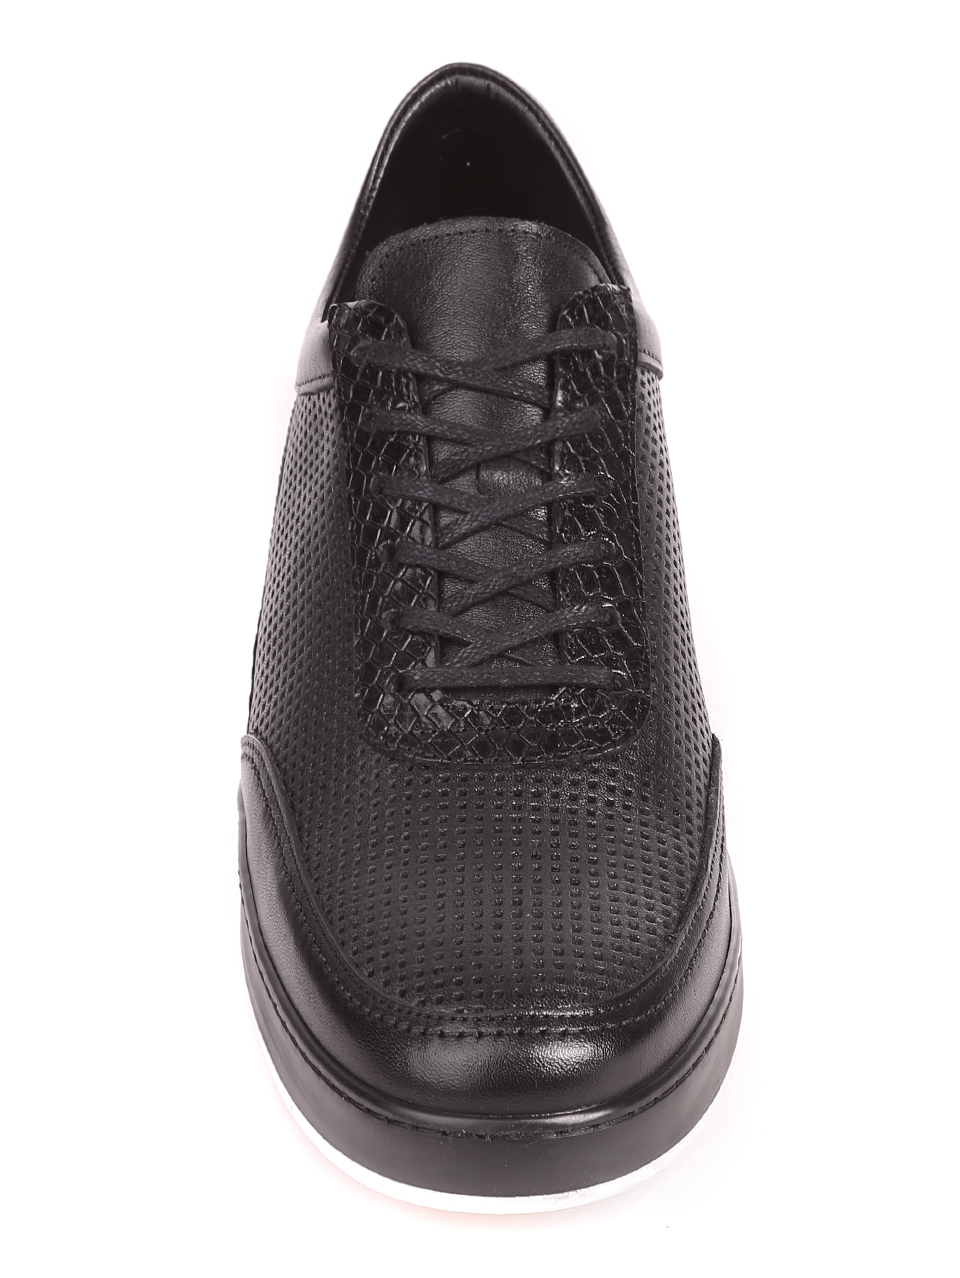 Ежедневни мъжки обувки от естествена кожа 7AT-21290 black